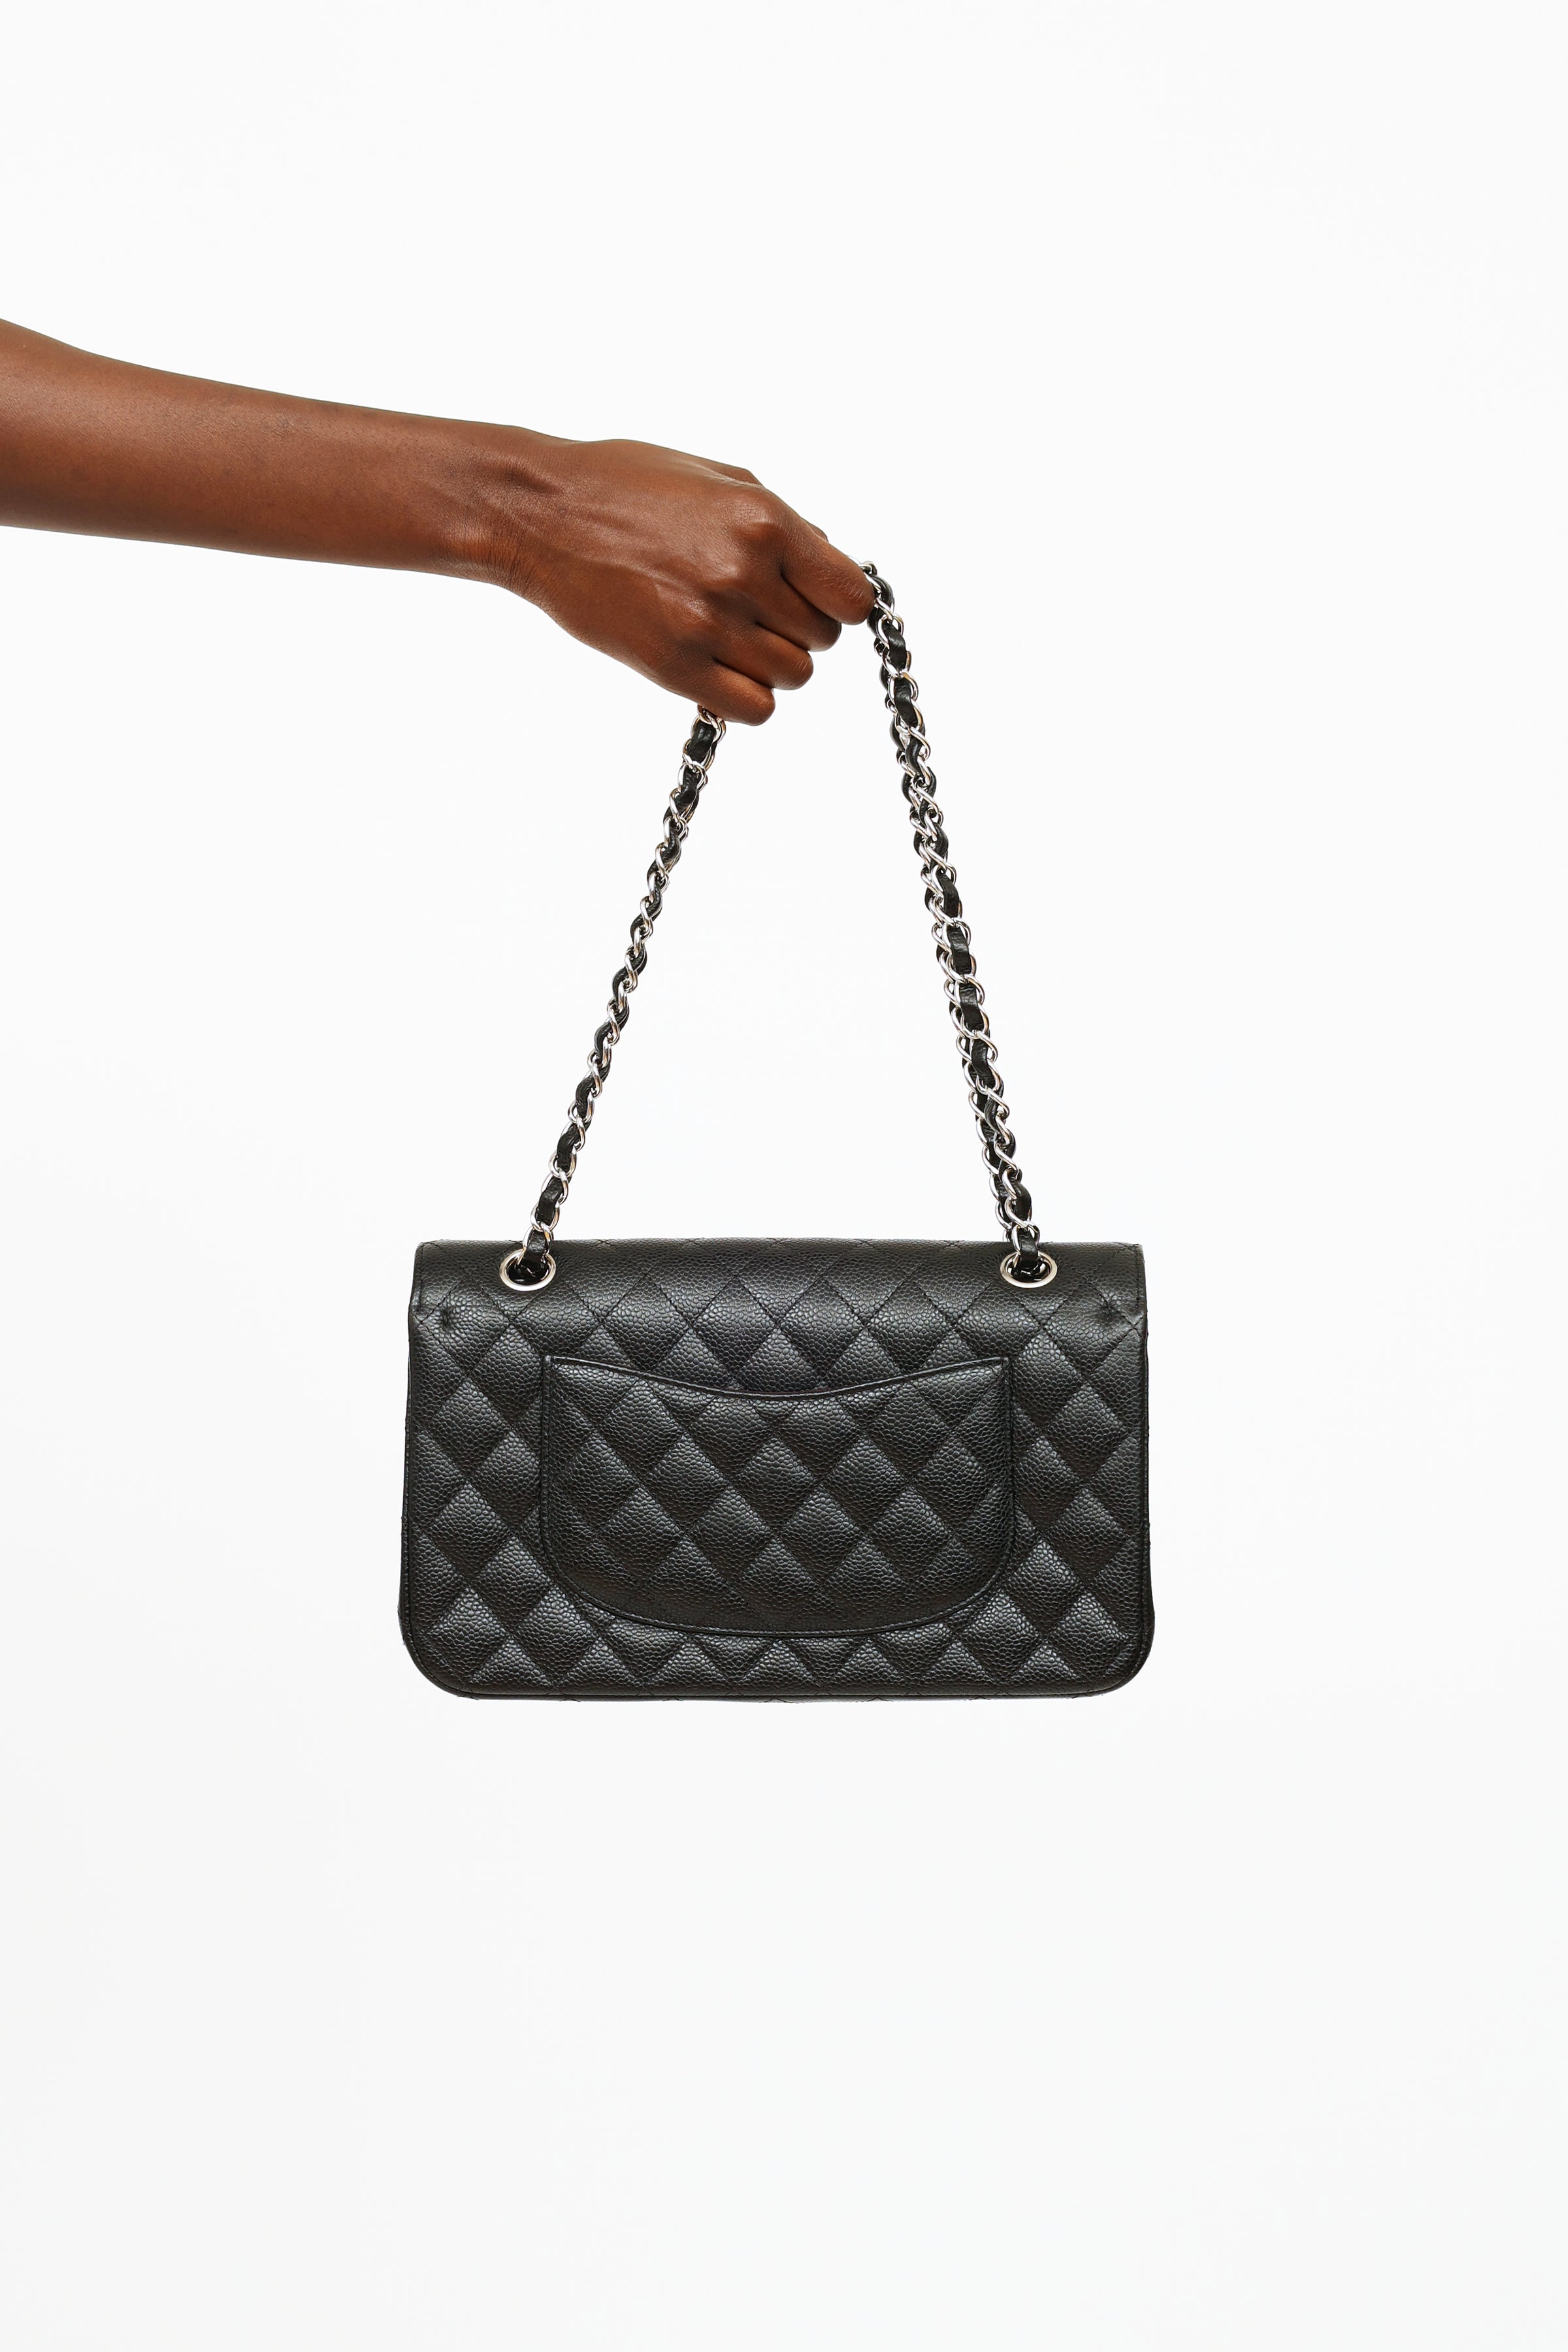 Chanel // 2019 Black Quilted Medium Double Flap Shoulder Bag – VSP